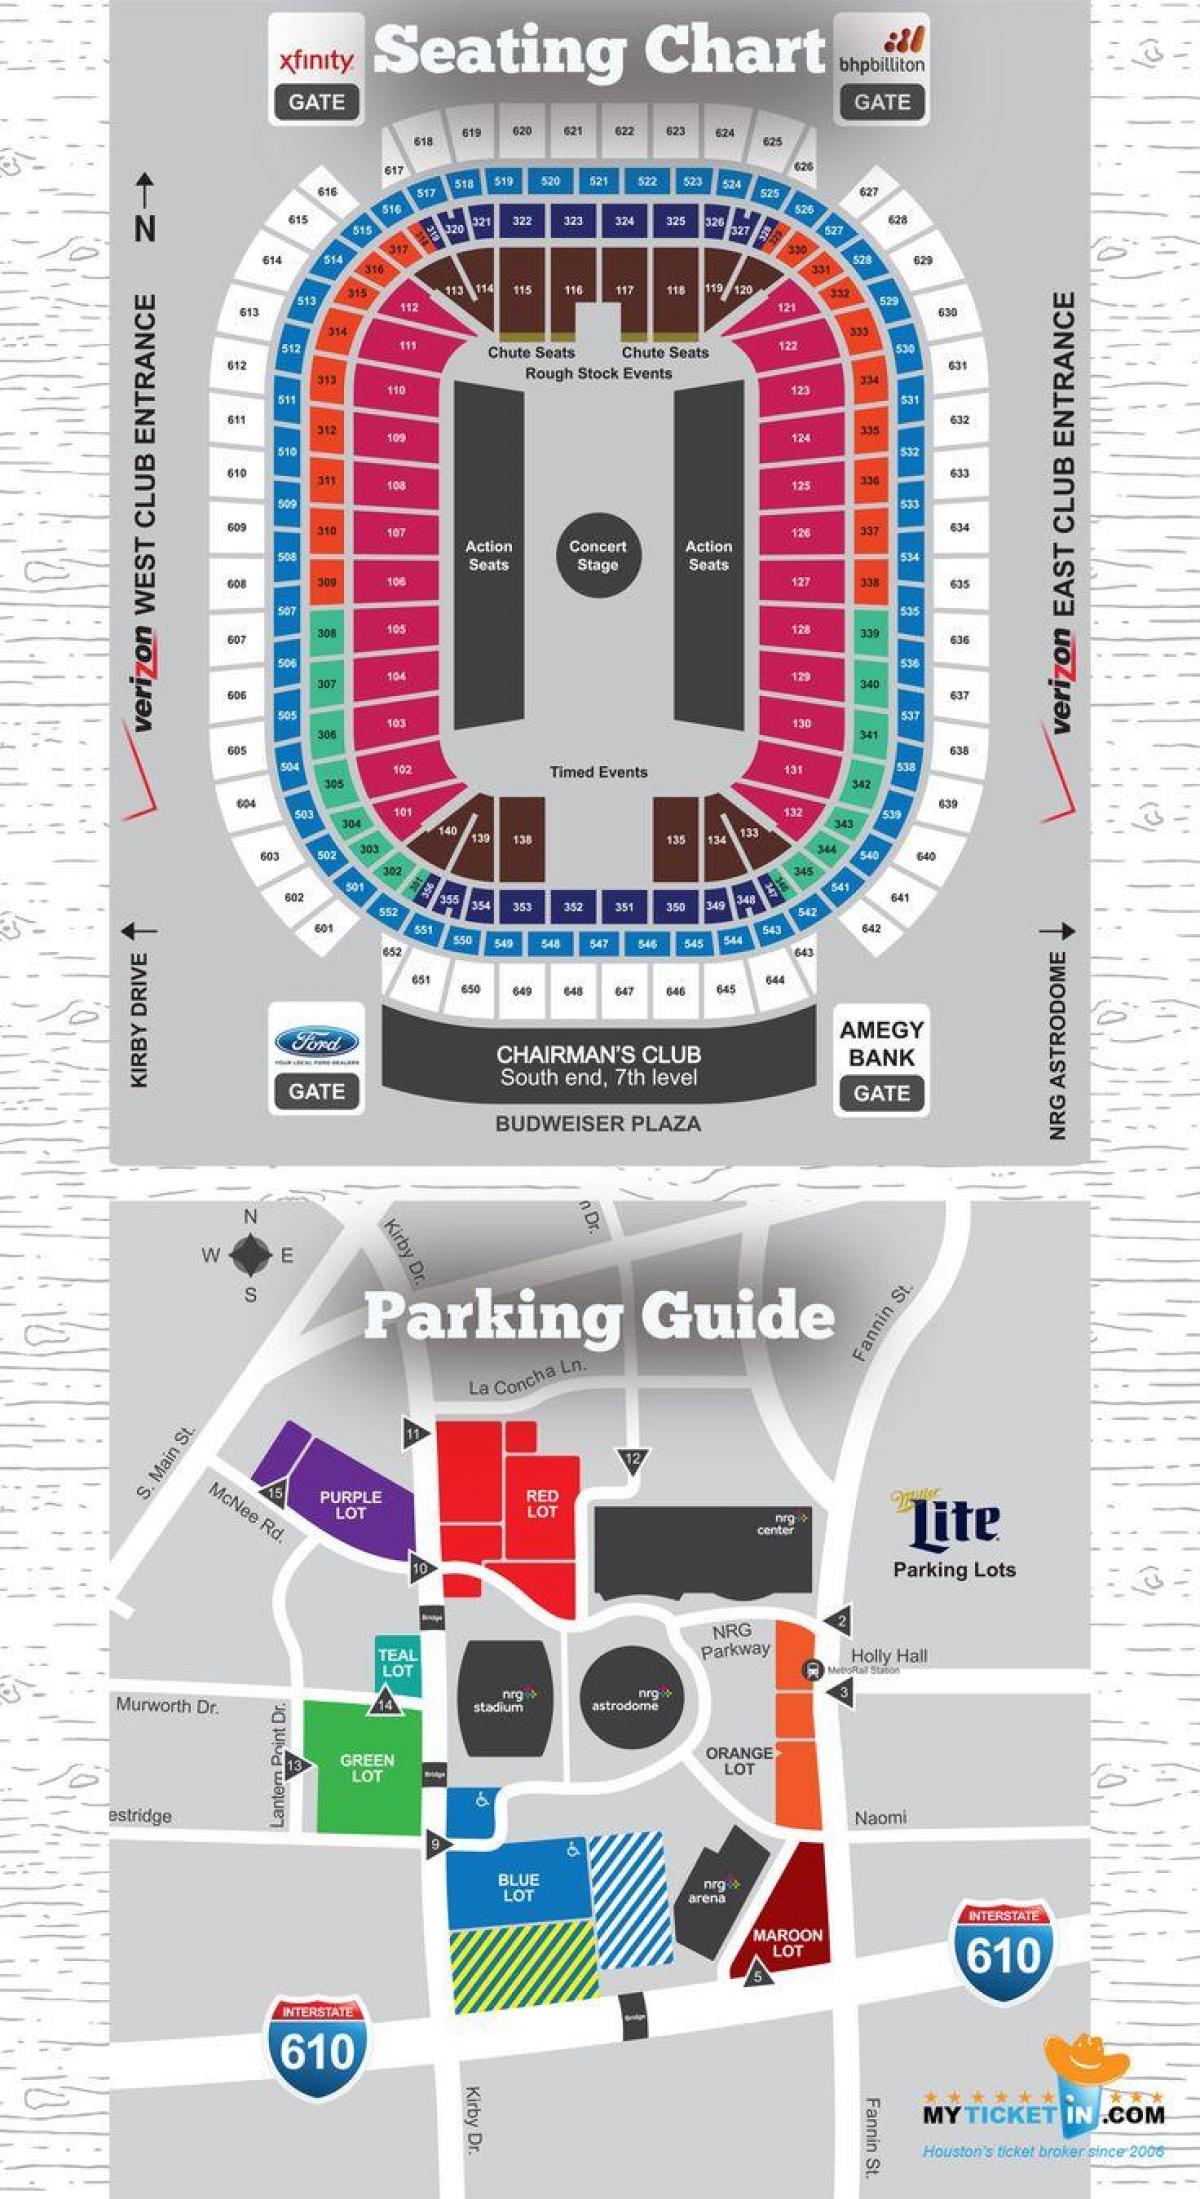 reliant stadium parking map